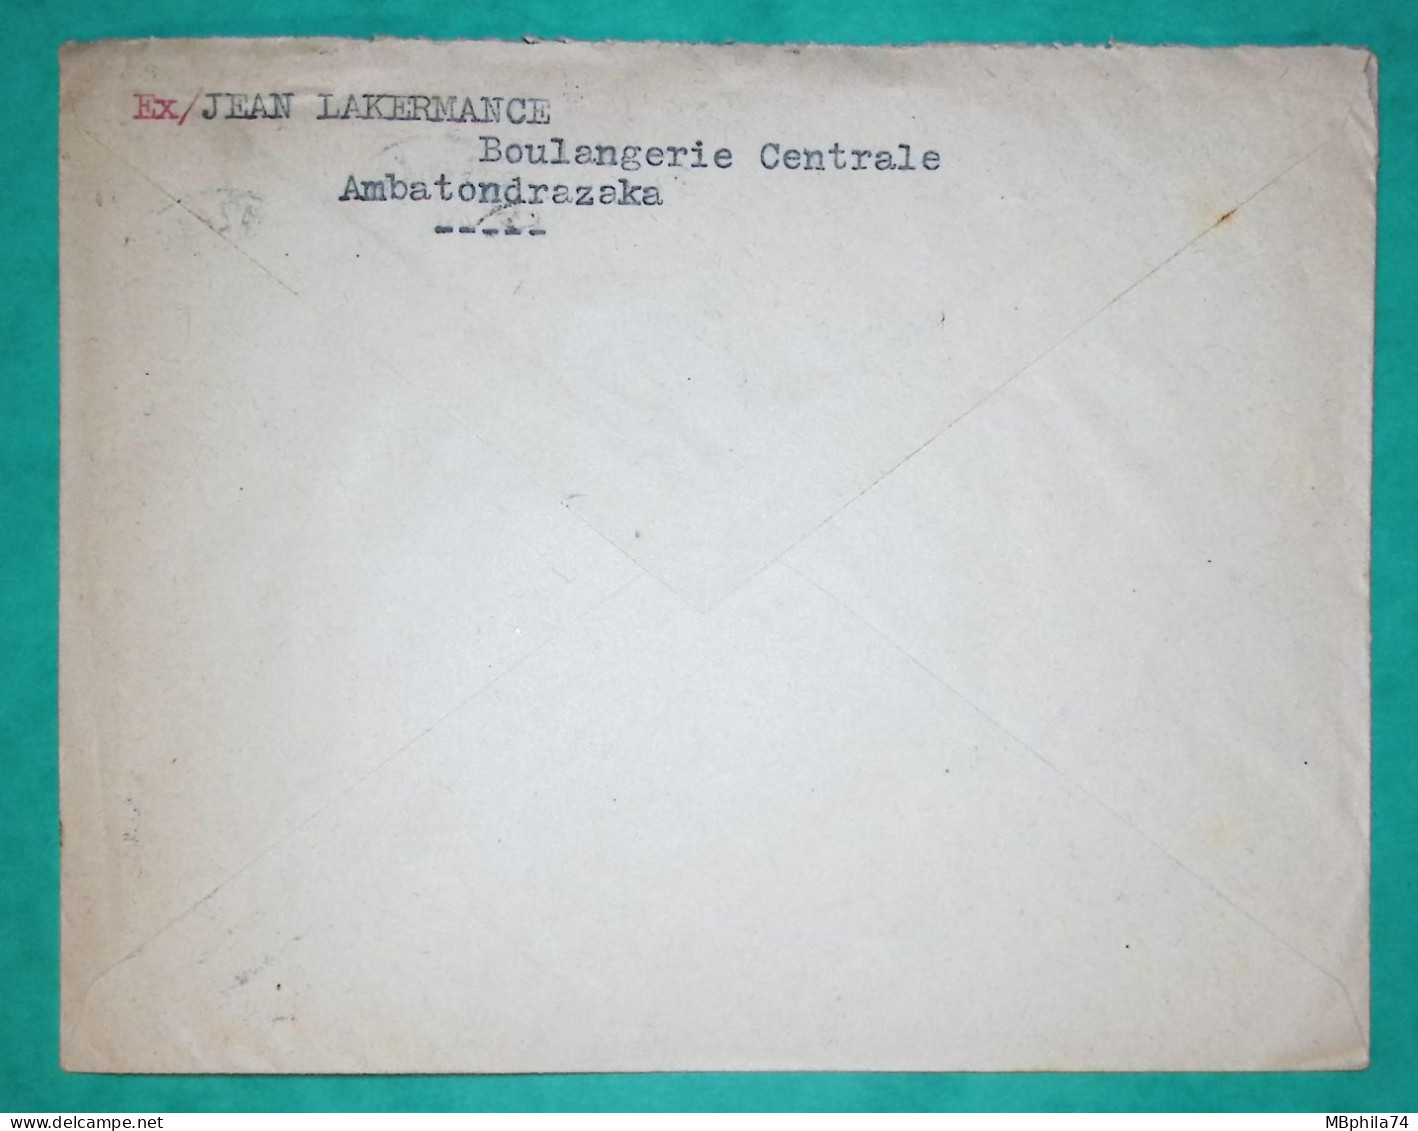 LETTRE PAR AVION MADAGASCAR AMBATONDRAZAKA VIGNETTE TUBERCULOSE POUR SARDA HORLOGERIE BESANCON DOUBS 1957 COVER FRANCE - Airmail